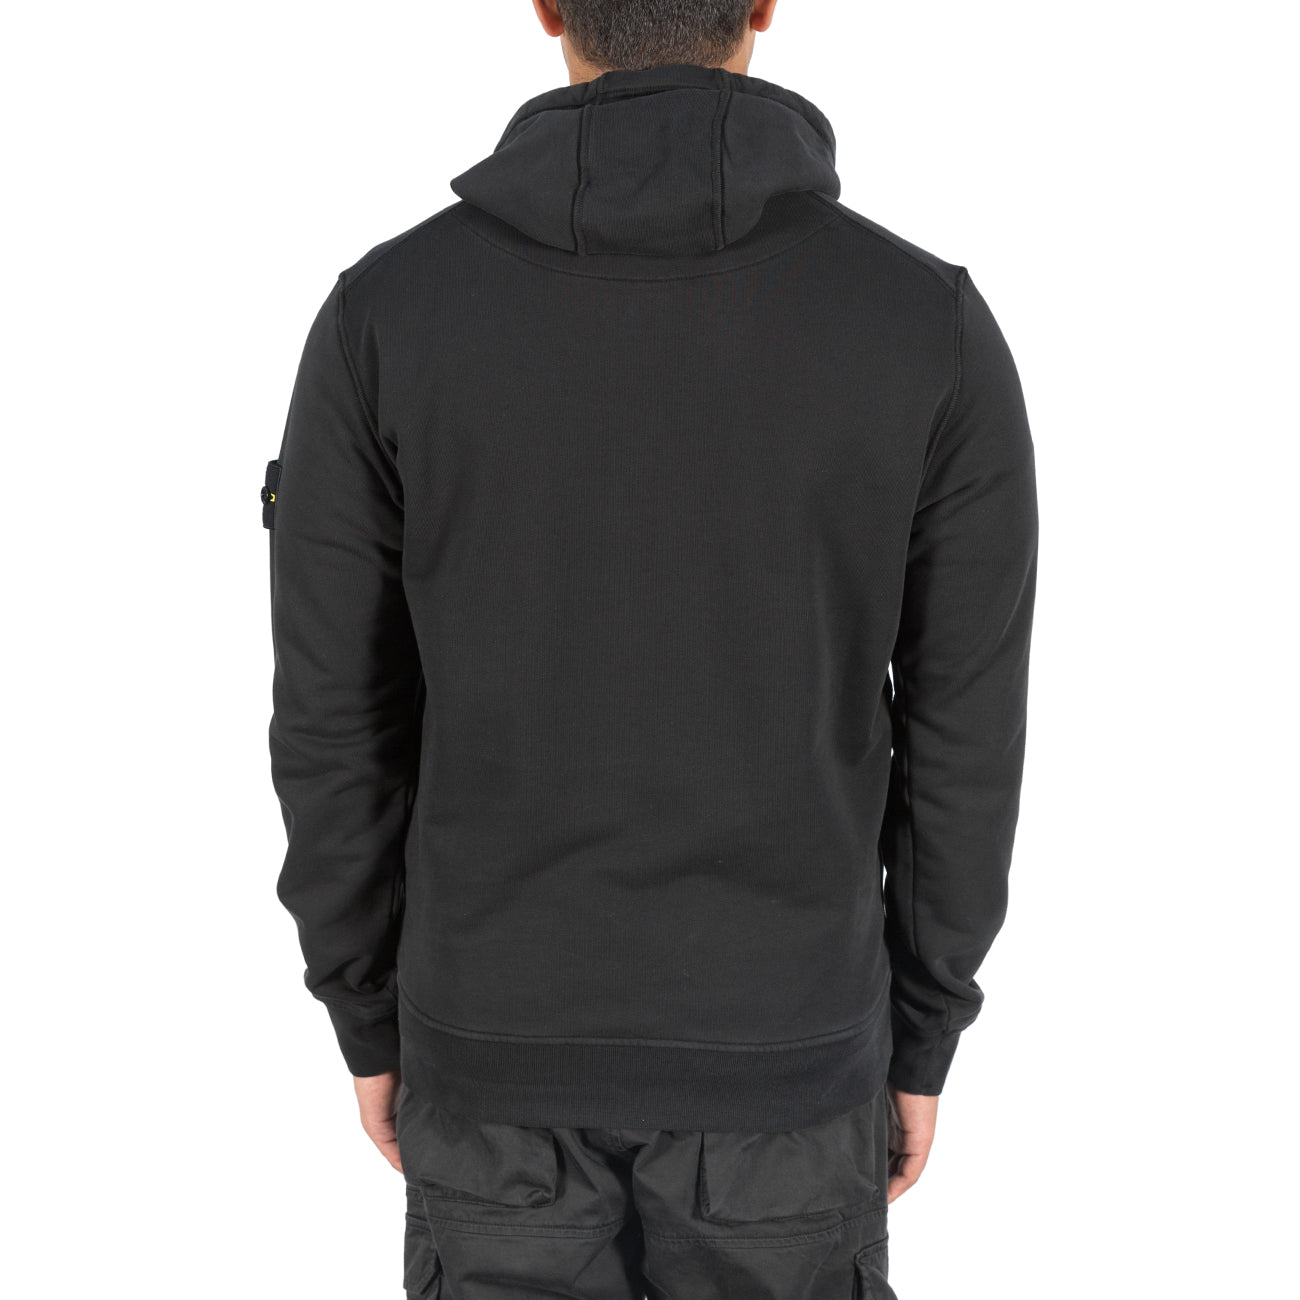 Sweatshirt Hooded Brushed - Black 2977